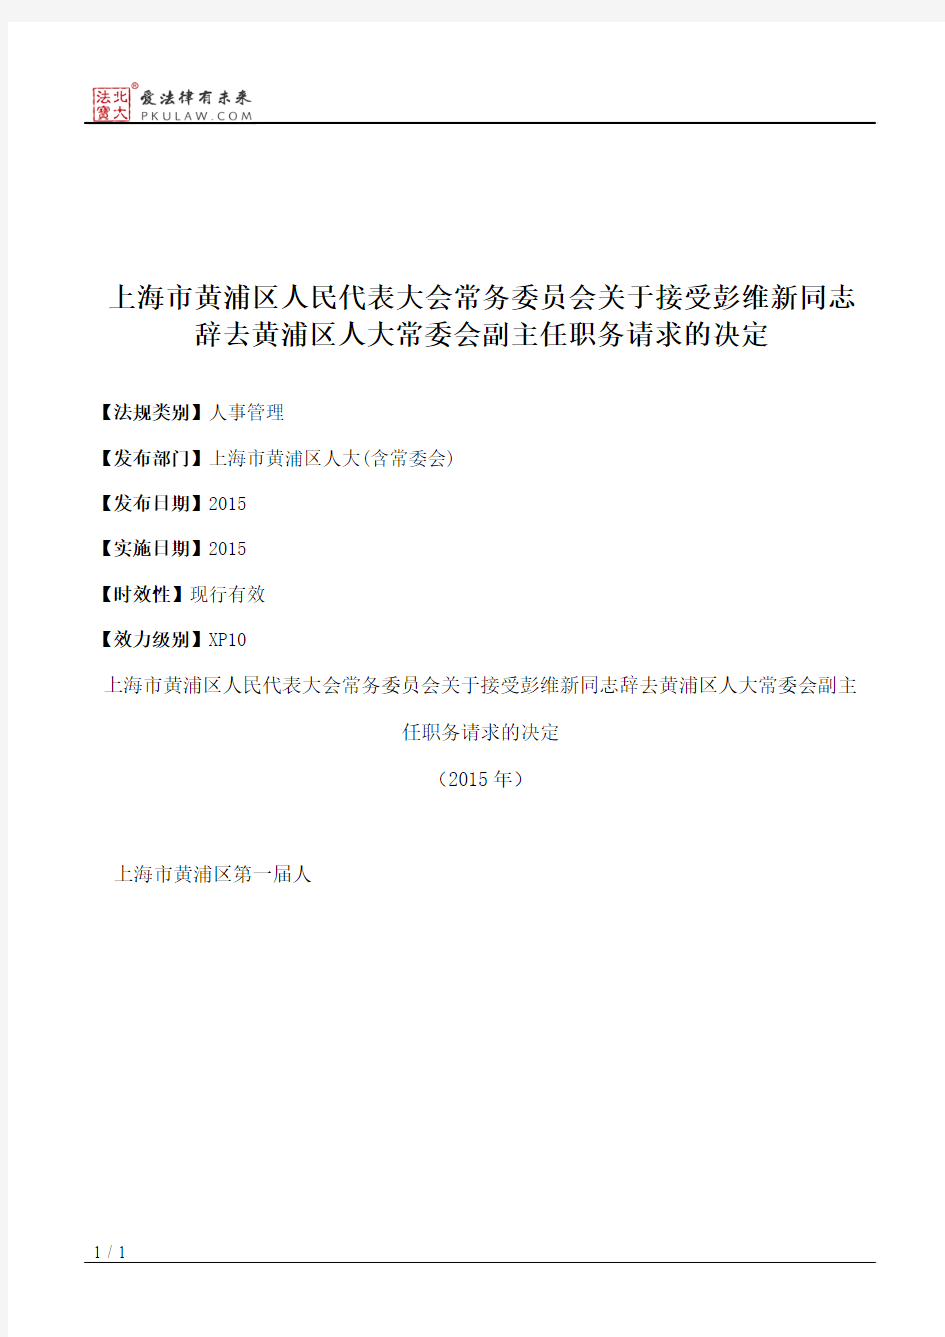 上海市黄浦区人大常委会关于接受彭维新同志辞去黄浦区人大常委会